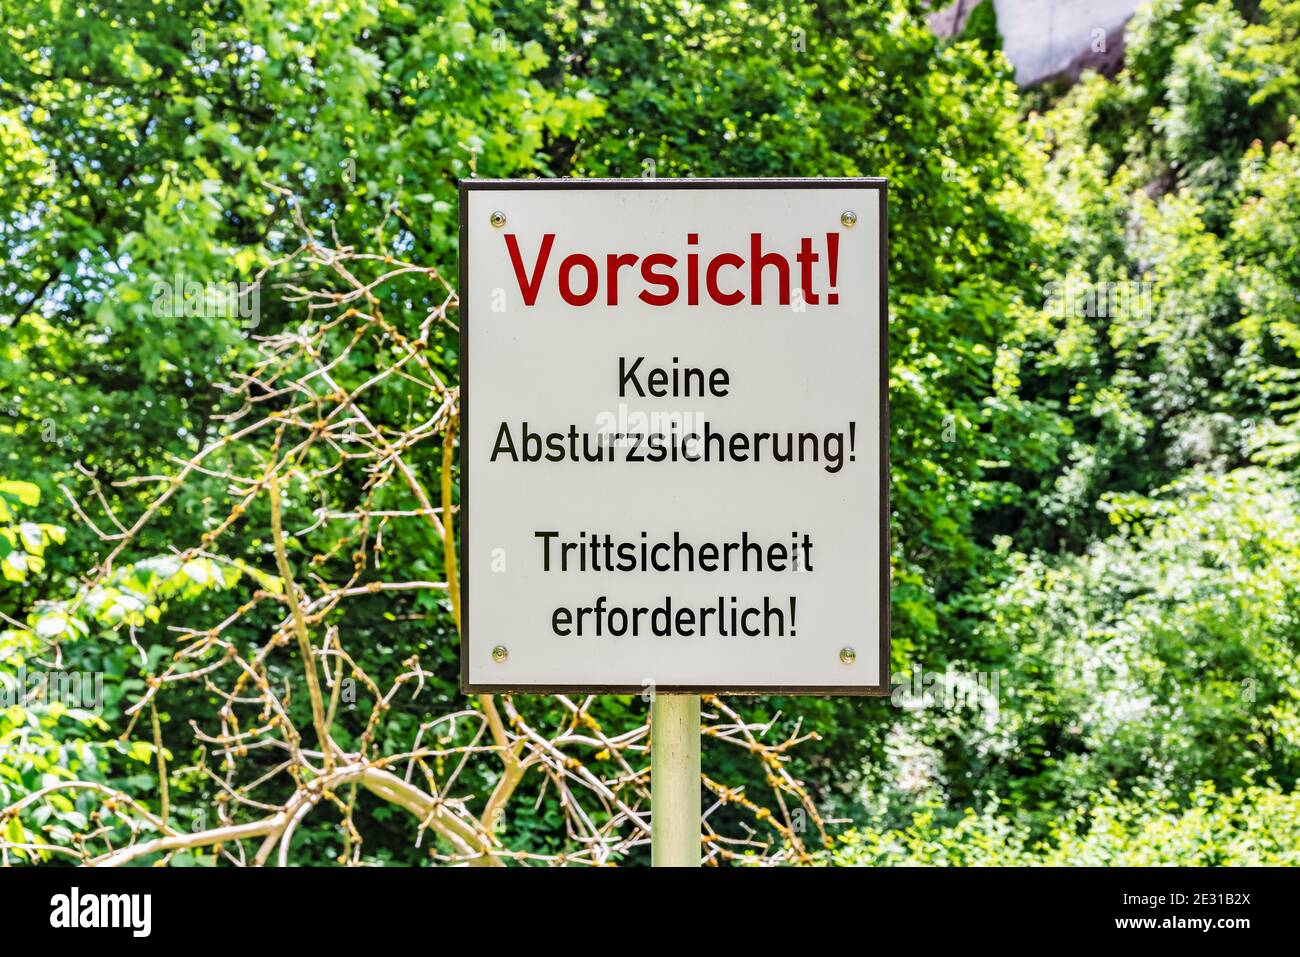 Cartello di avvertimento tedesco con l'iscrizione Vorsicht, keine Asturzsicherung! Tritsicherheit erforderlich! Foto Stock